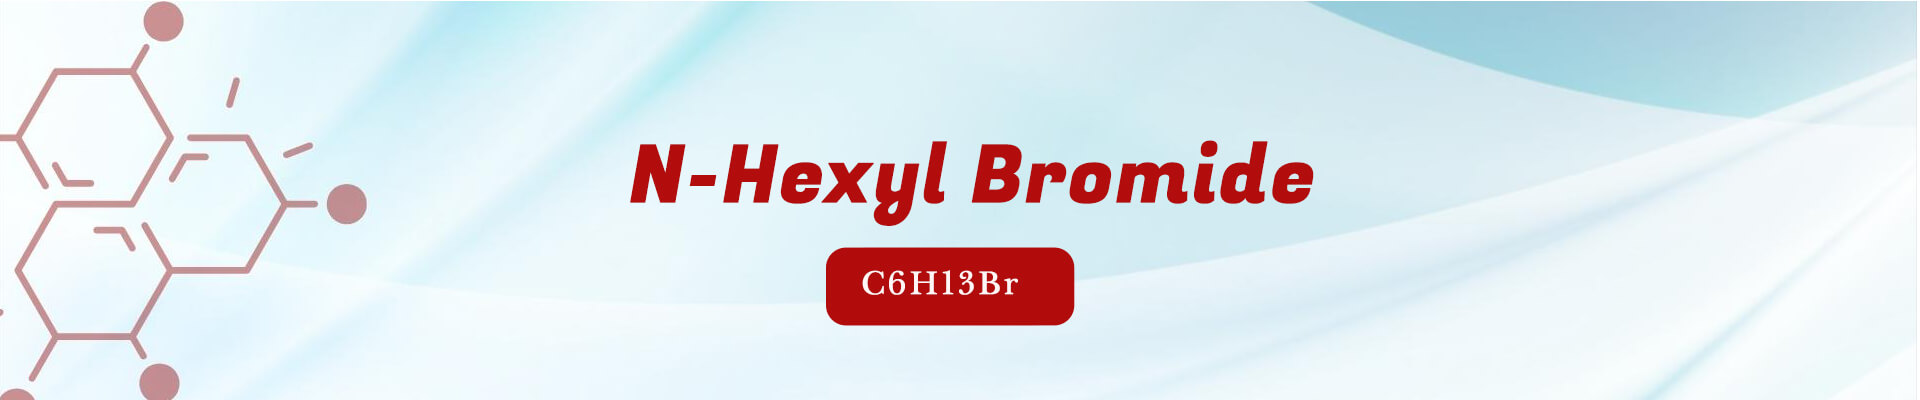 N-Hexyl Bromide